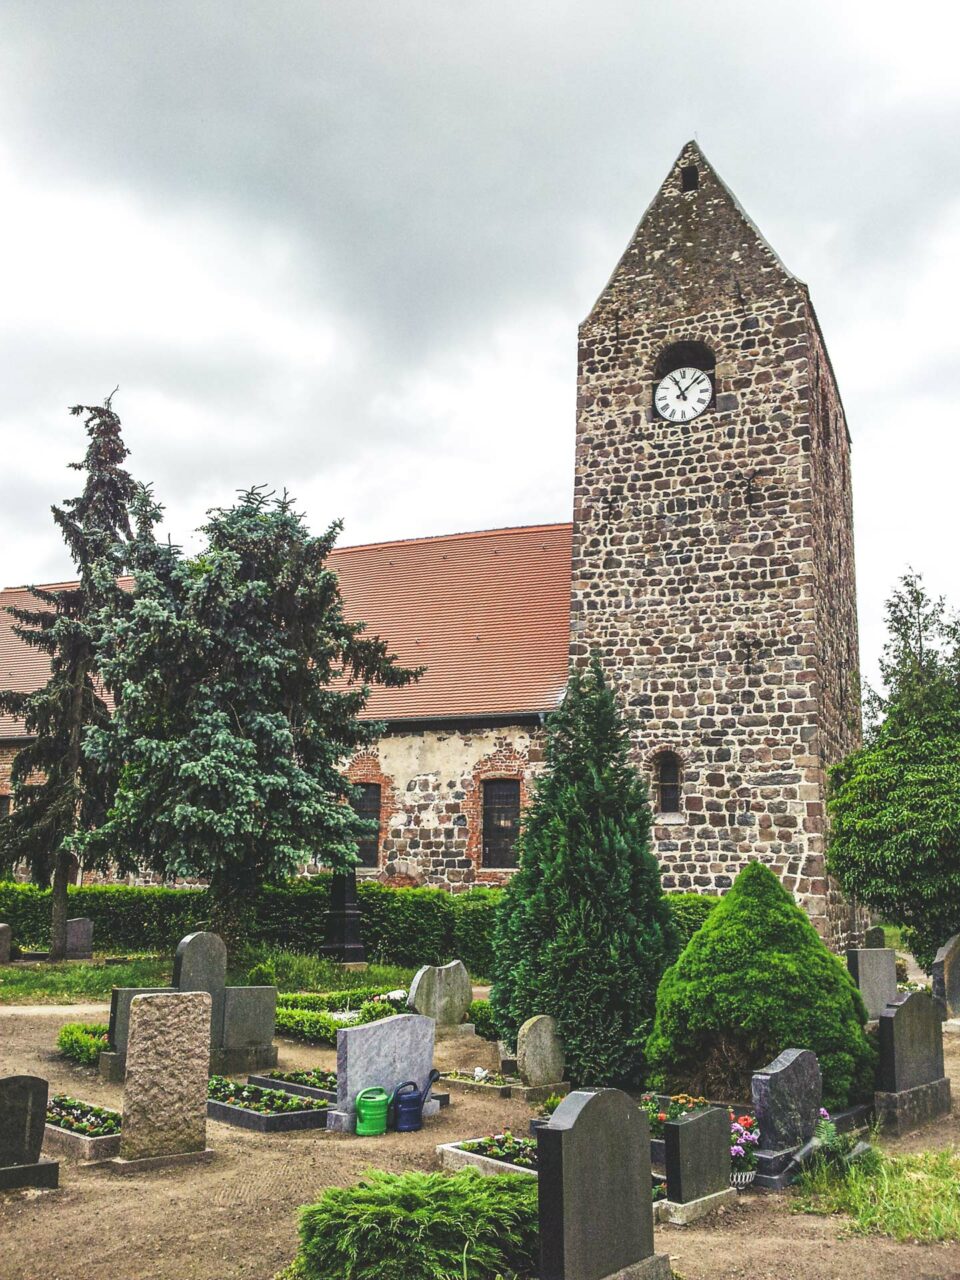 Die Dorfkirche in Heeren wurde bereits im 12. Jahrhundert aus Feldsteinen gebaut. Typisch für die vielen kleinen Dörfer entlang des Weges.